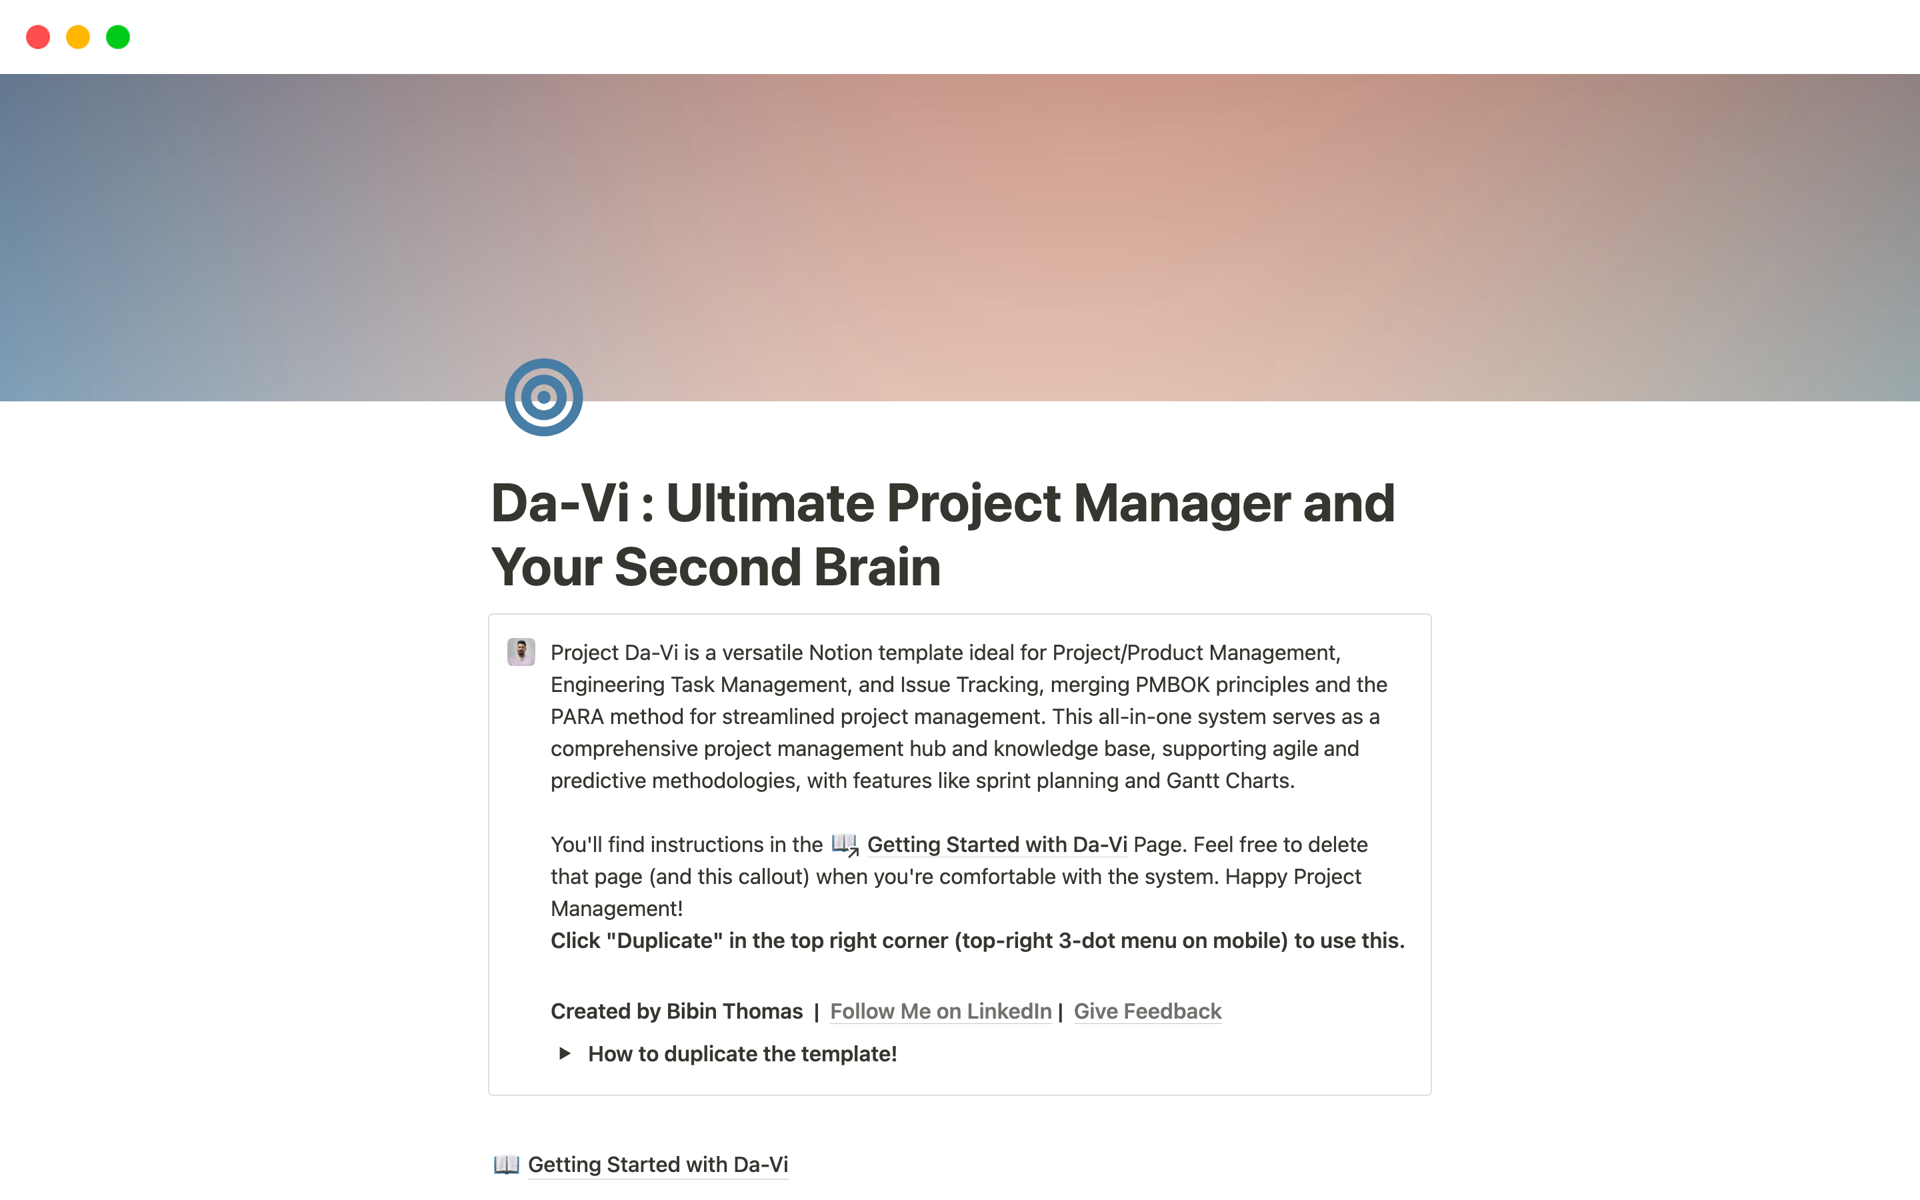 Uma prévia do modelo para Da-Vi:Ultimate Project Manager & Your Second Brain